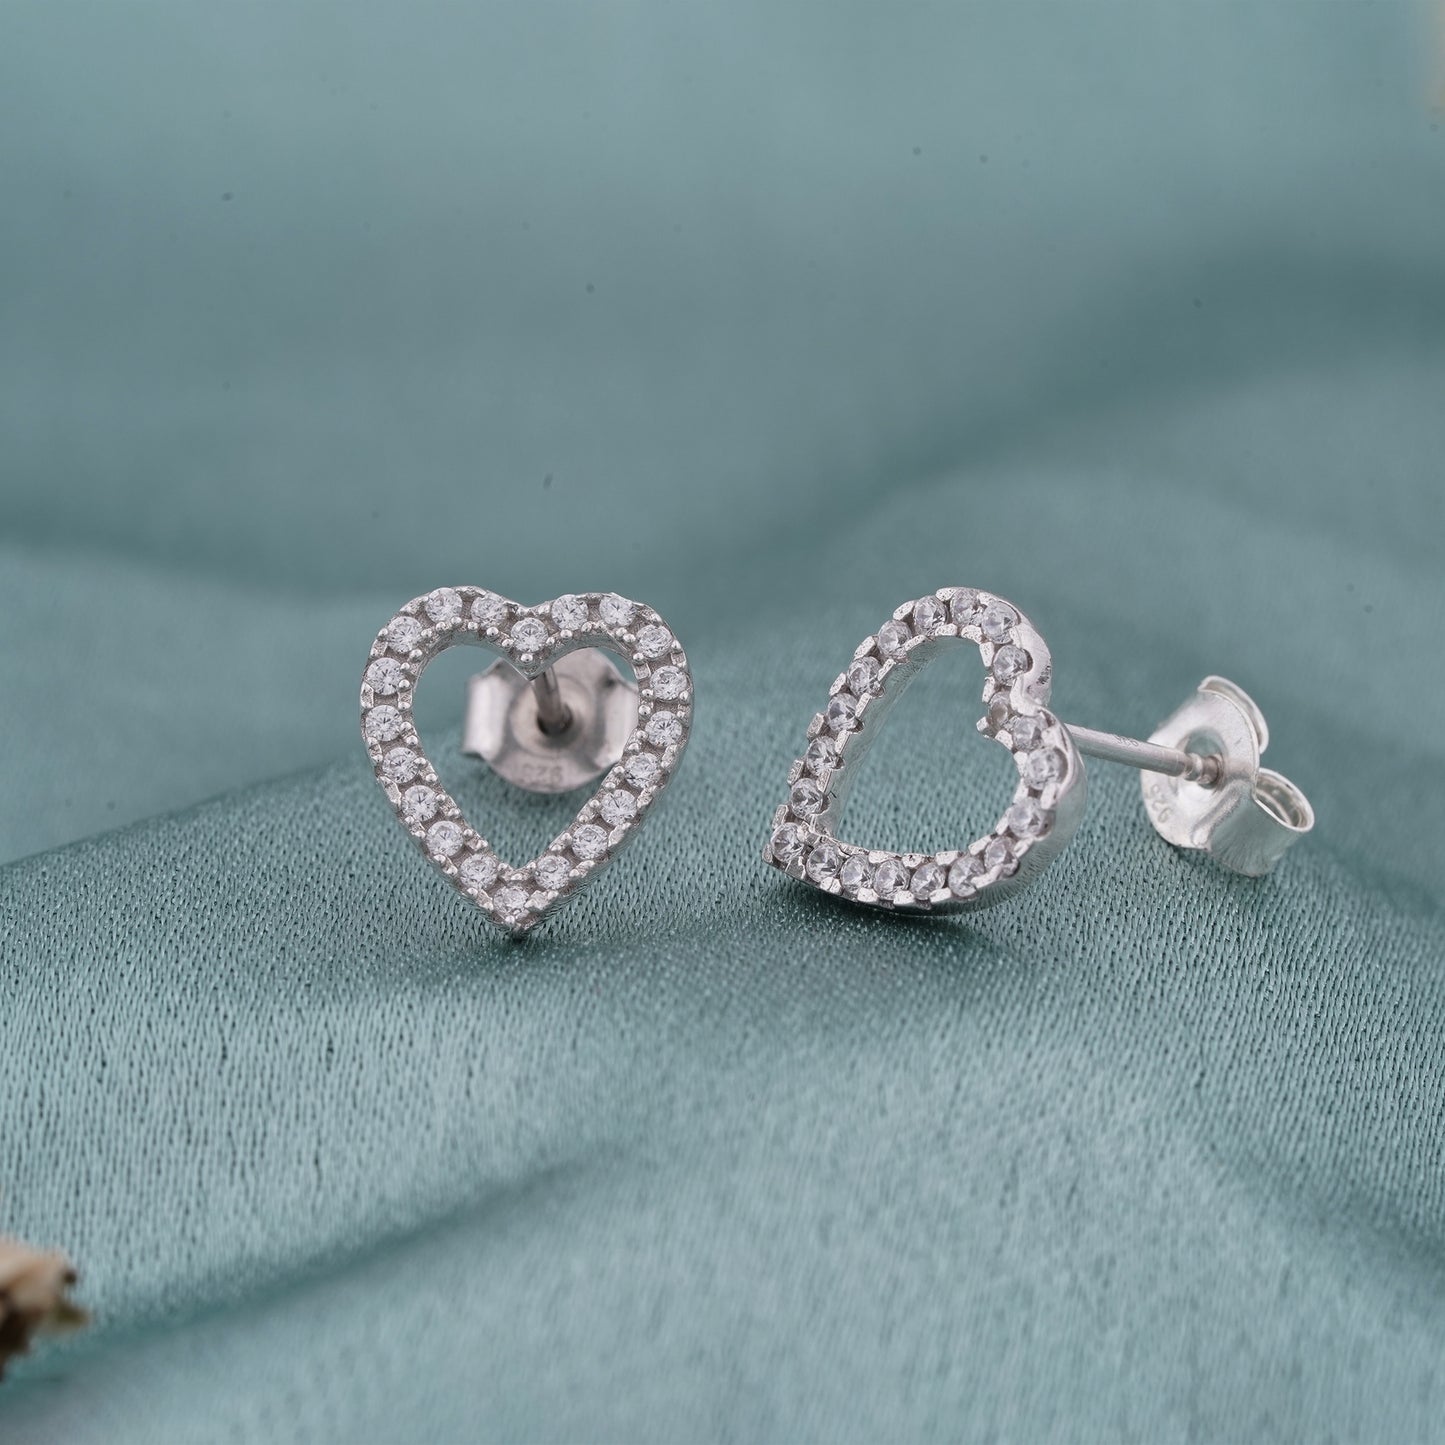 Silver Zircon Studded Heart Earrings